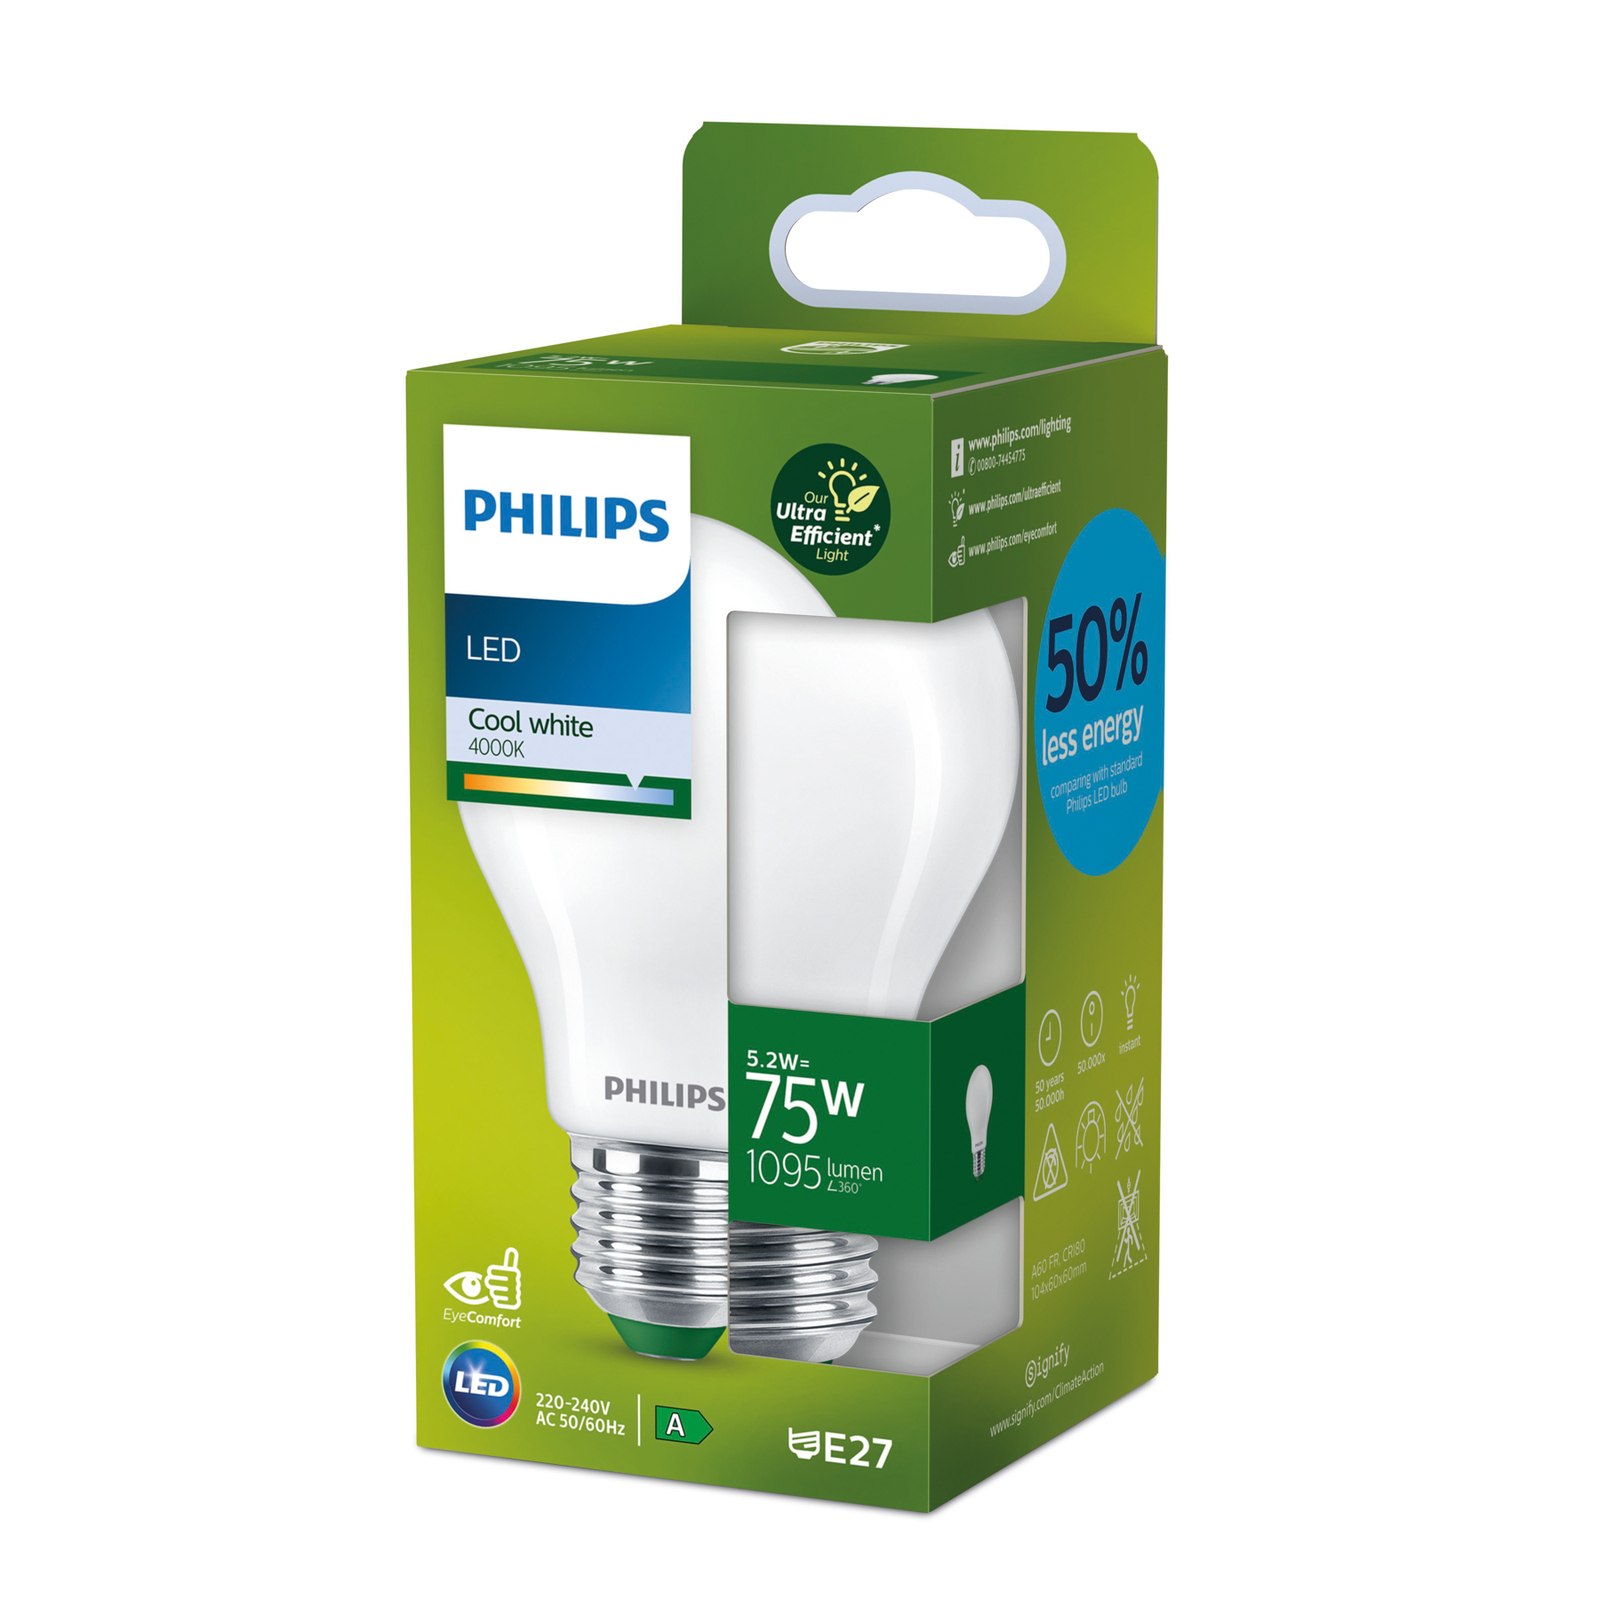 Philips E27 LED bulb A60 5.2W 1095lm 4,000K matt